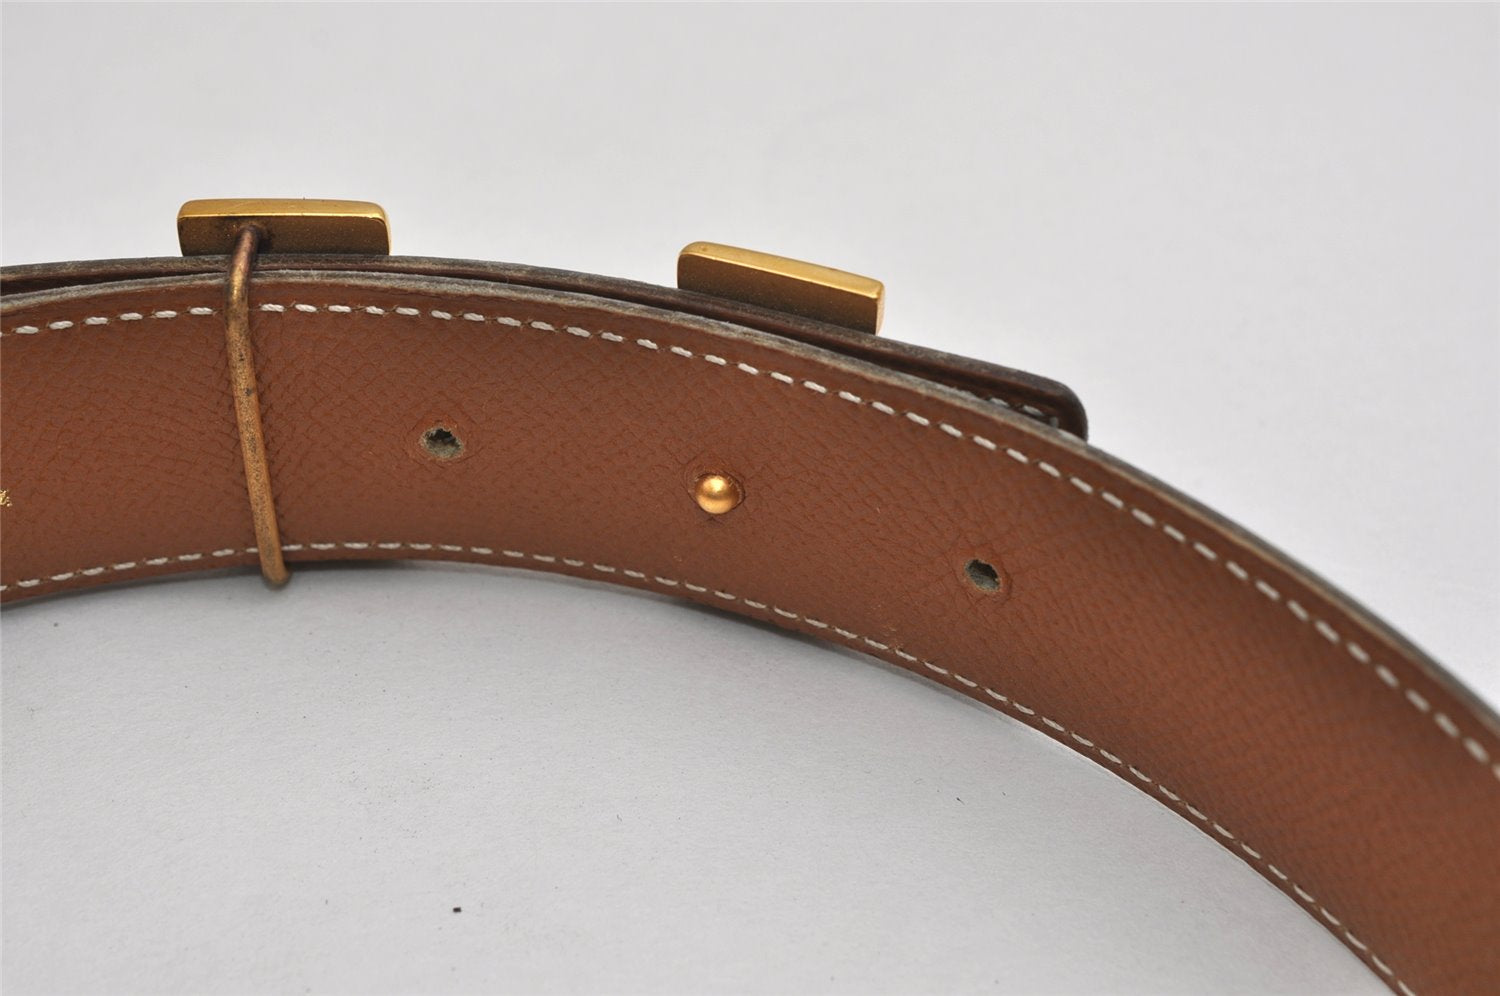 Authentic HERMES Constance Leather Belt Size 68cm 26.8